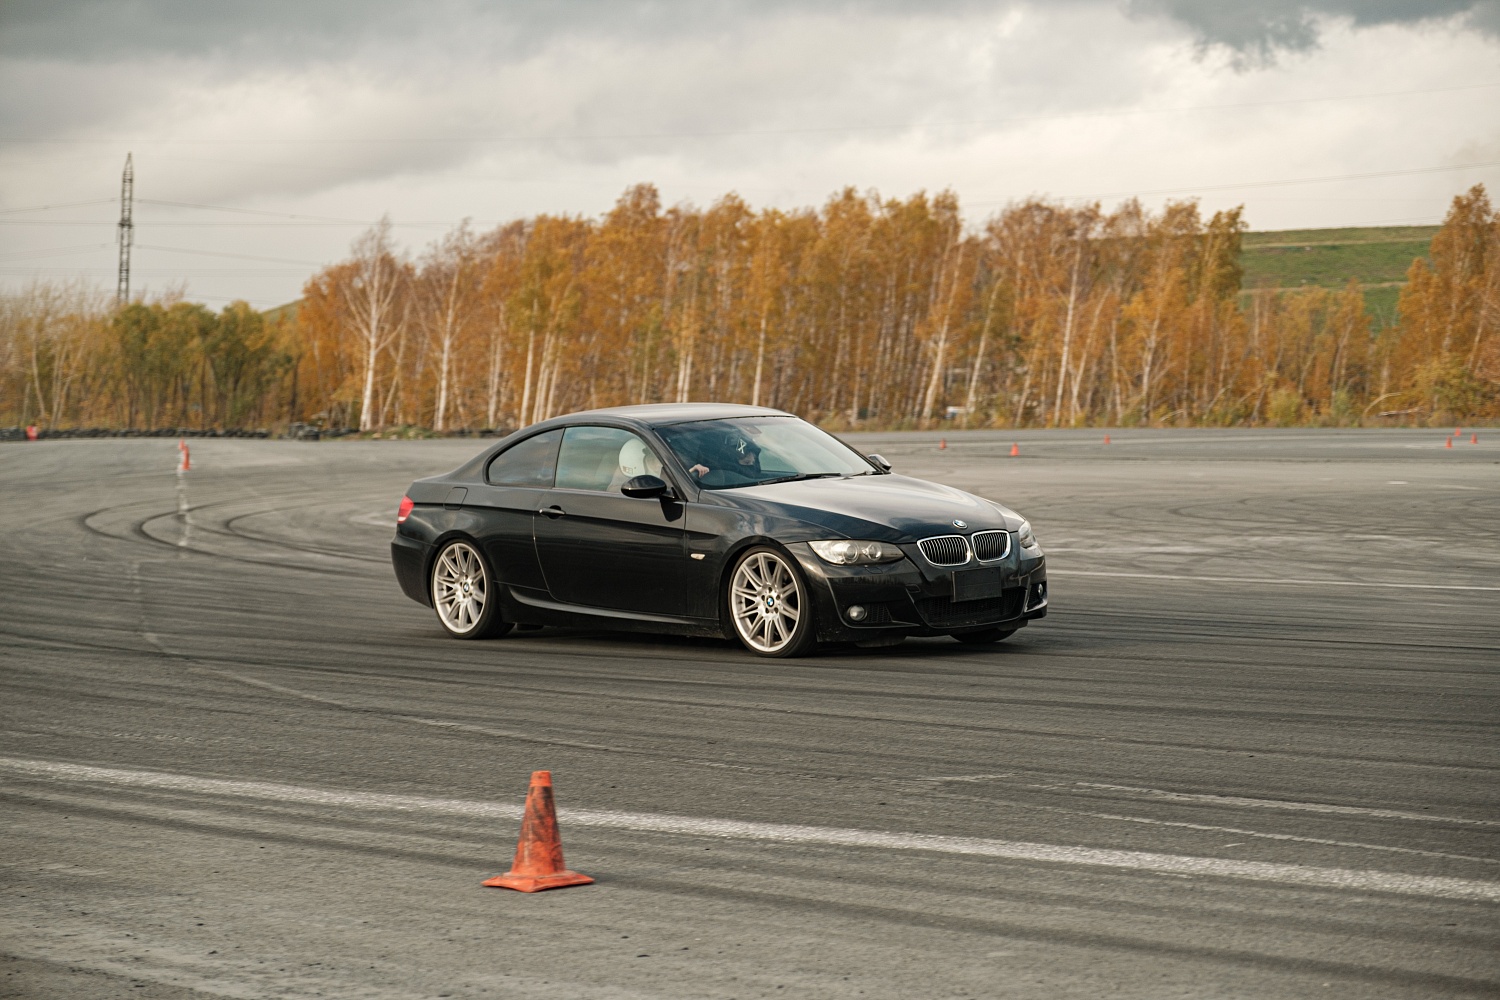 Экстремальное вождение разовое занятие 1 час 50 мин на BMW 3-серии купе. 2 уровень